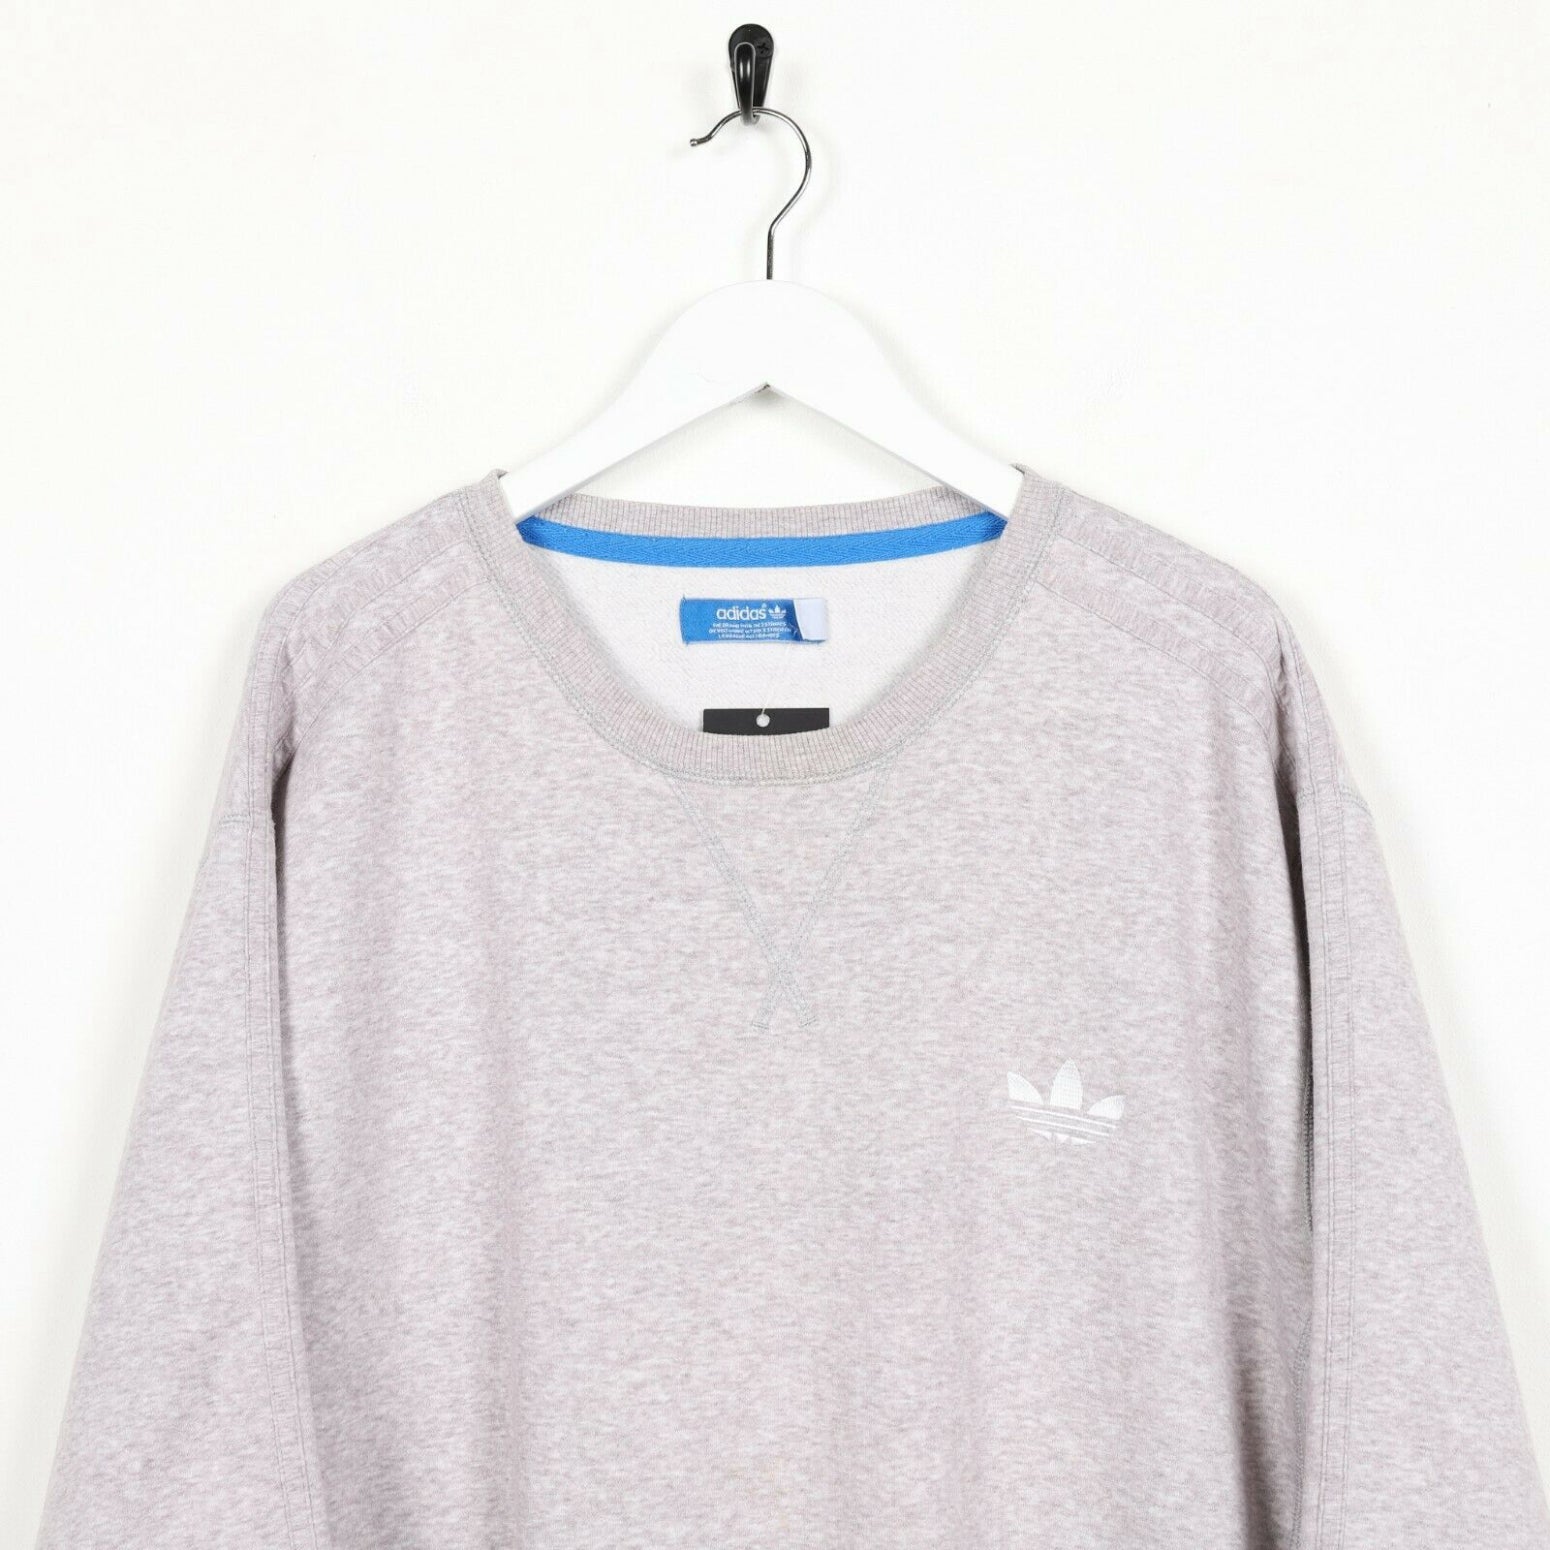 adidas originals sweatshirt with small logo in grey